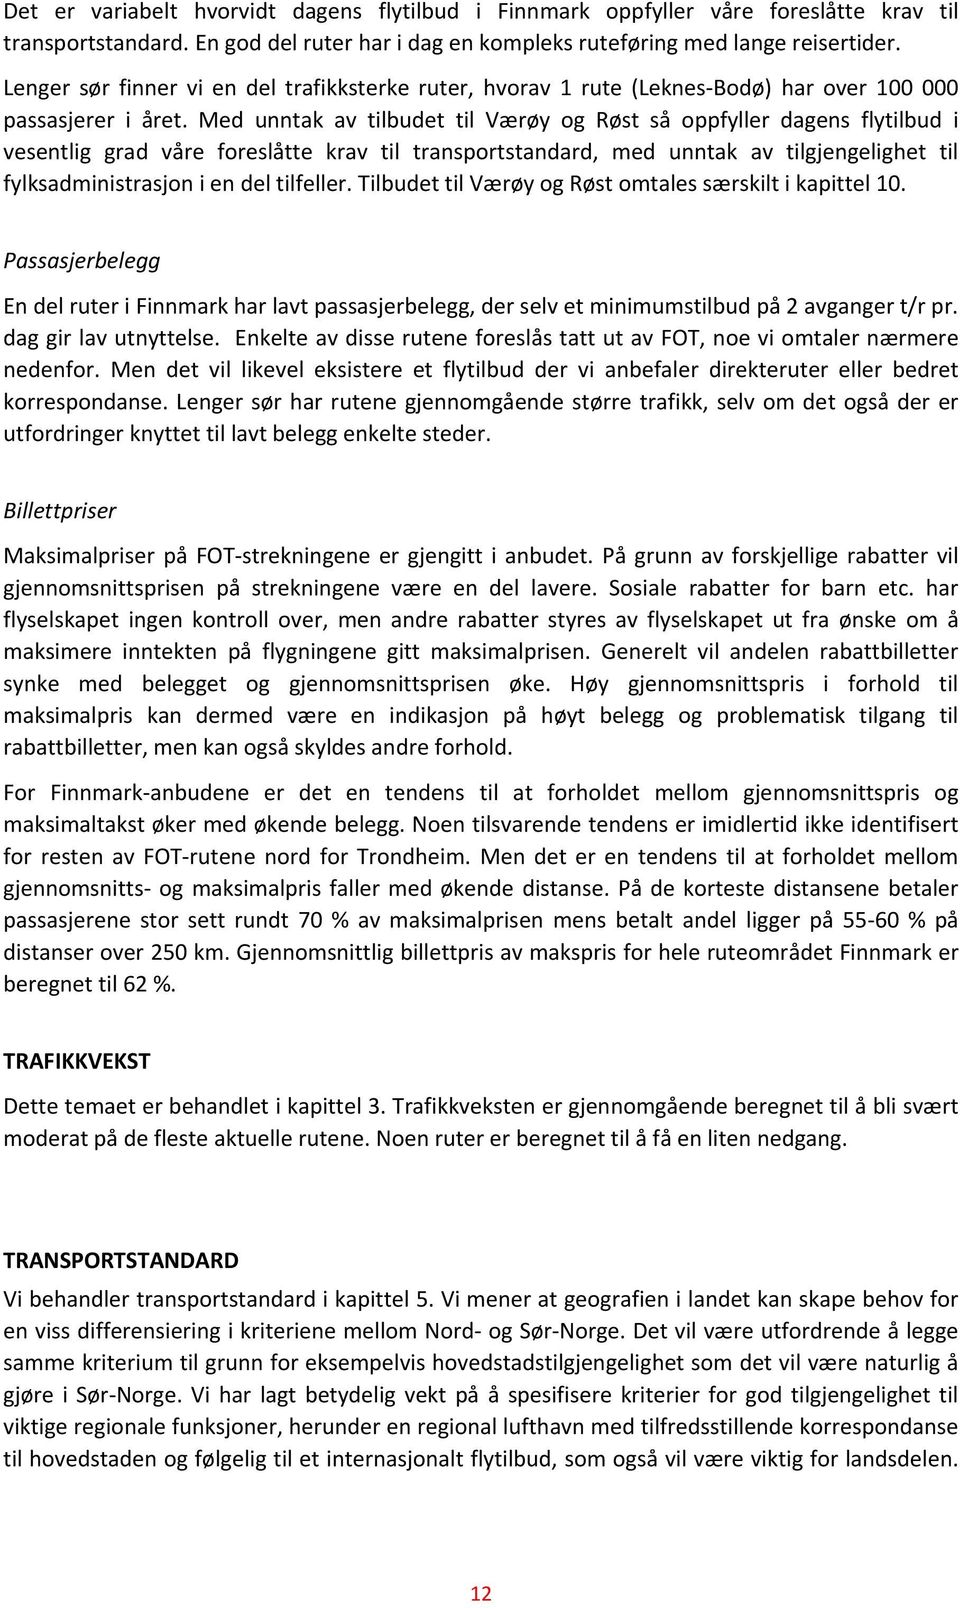 Med unntak av tilbudet til Værøy og Røst så oppfyller dagens flytilbud i vesentlig grad våre foreslåtte krav til transportstandard, med unntak av tilgjengelighet til fylksadministrasjon i en del